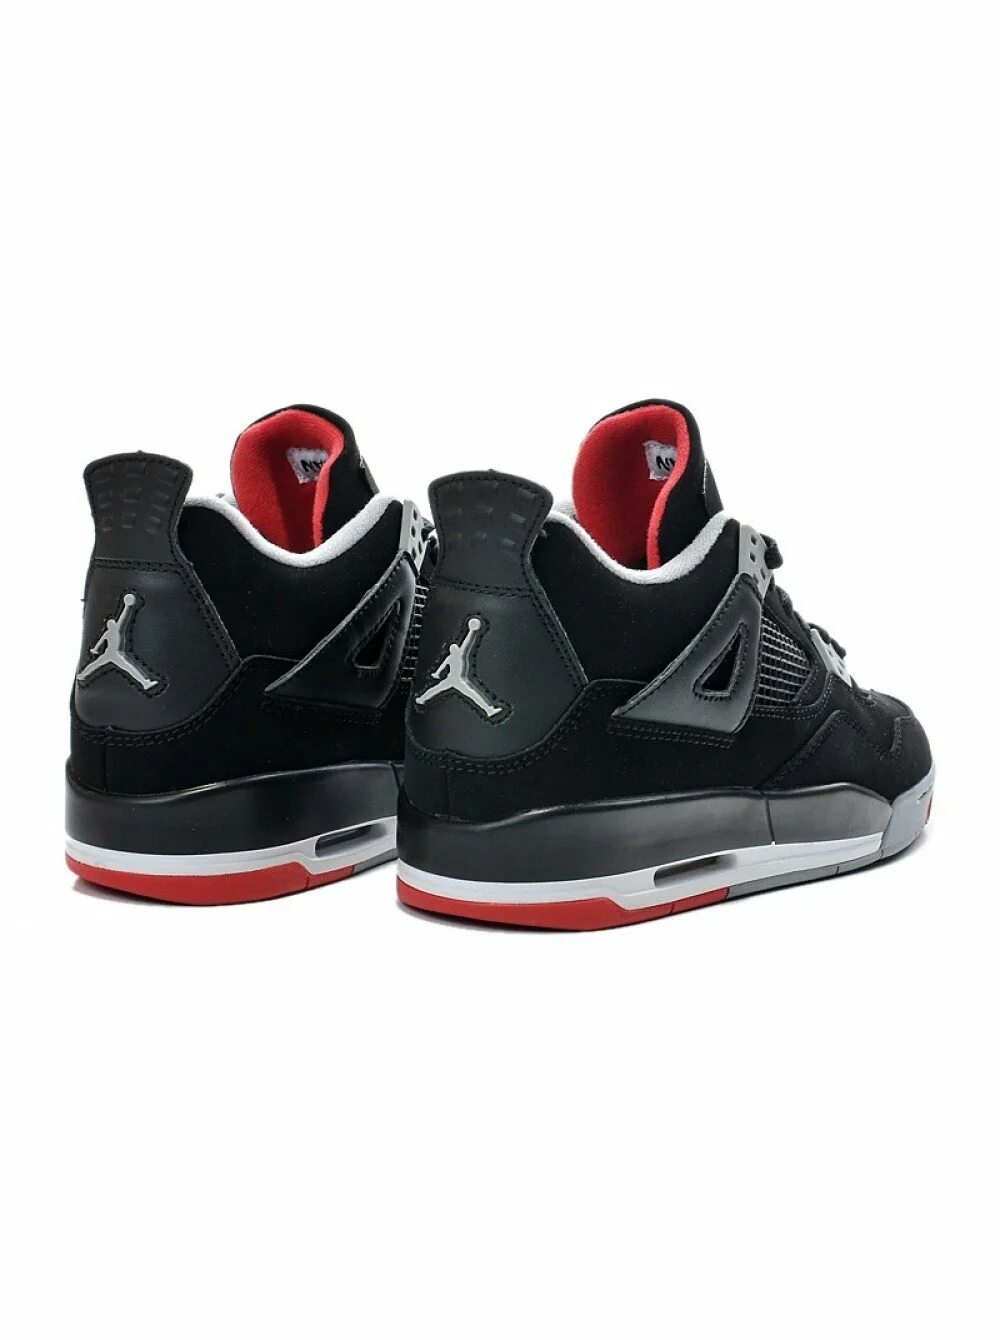 Jordan кроссовки купить оригиналы. Nike Air Jordan 4. Nike Air Jordan 4 Retro. Nike Air Jordan 4 Retro Black. Nike Air Jordan 4 Retro черные.